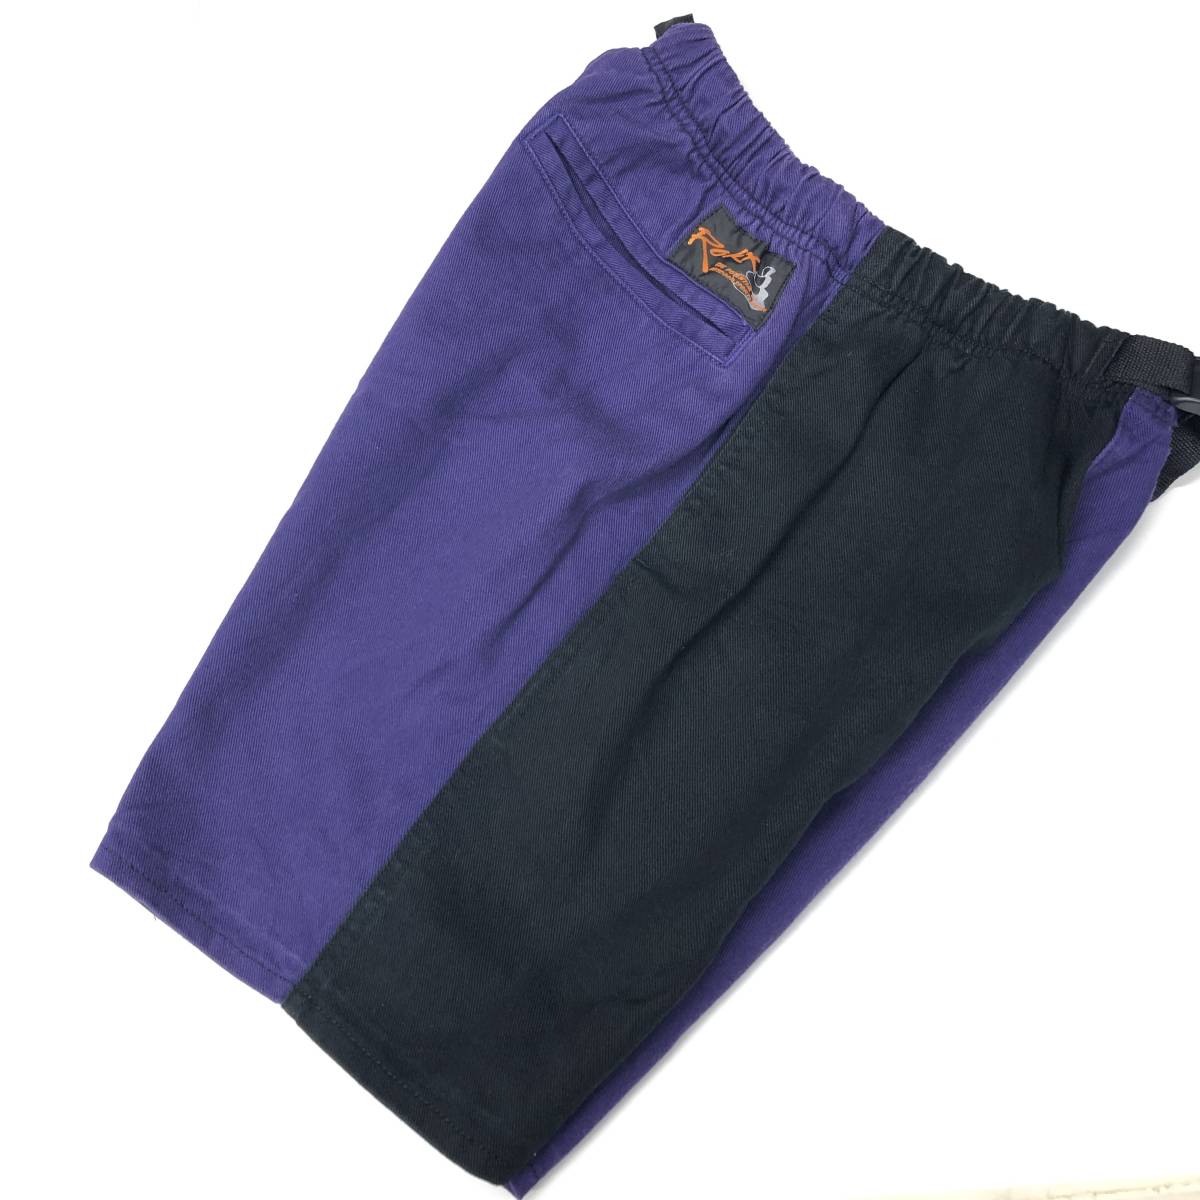  рок ... ROKX  хлопок   укороченные брюки  ... XS размер    черный   фиолетовый   военно-морской флот 